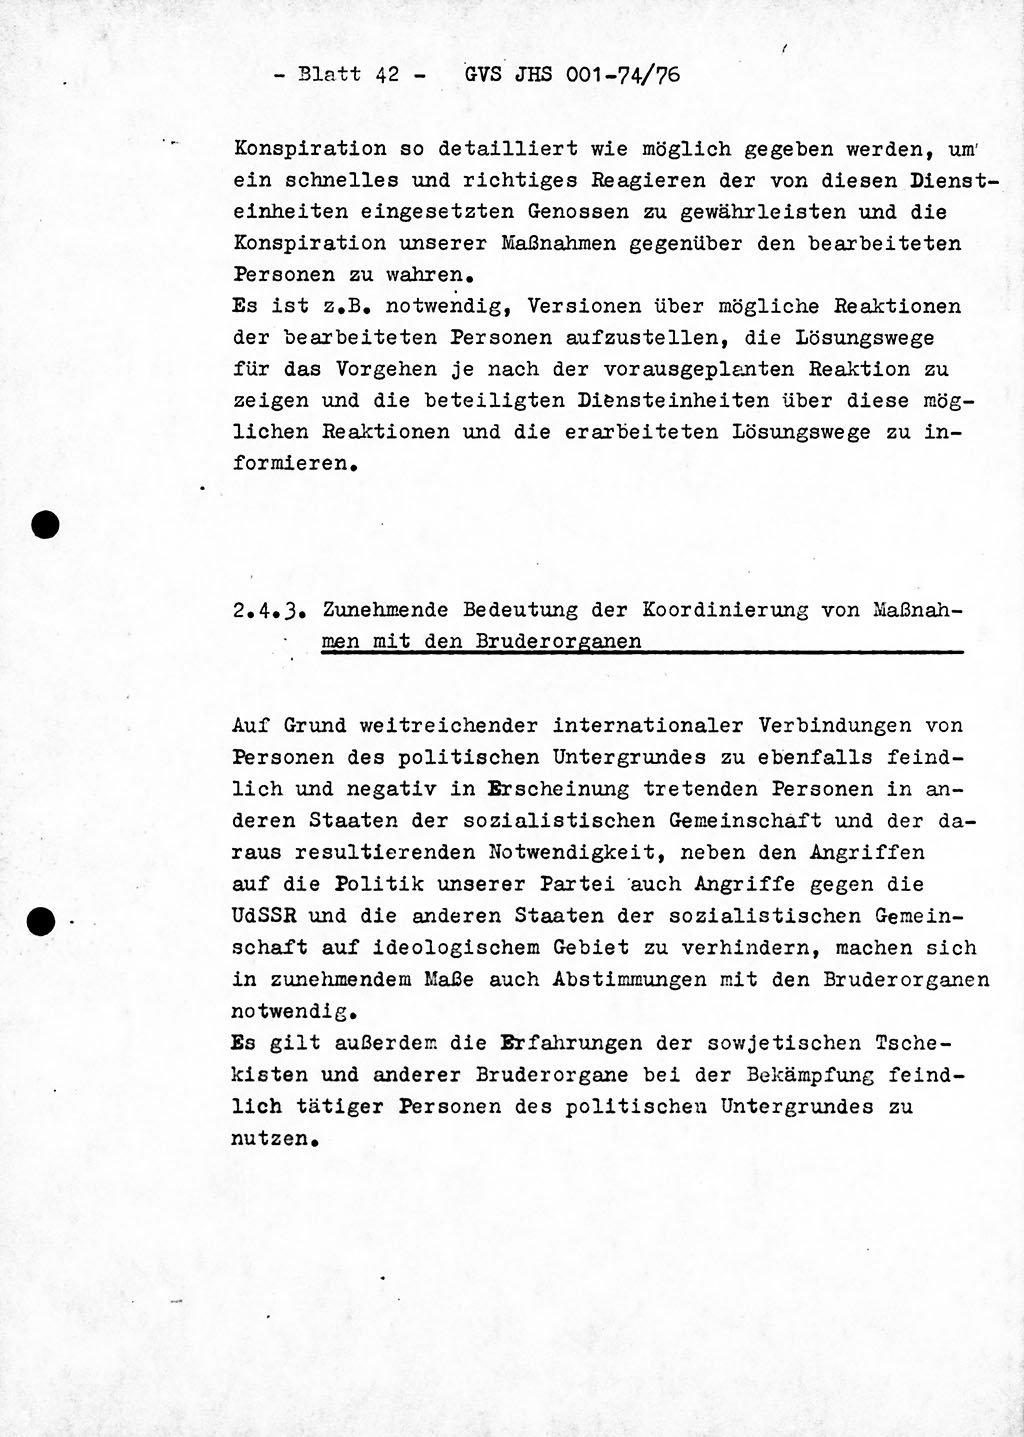 Diplomarbeit Hauptmann Joachim Tischendorf (HA ⅩⅩ), Ministerium für Staatssicherheit (MfS) der Deutschen Demokratischen Republik (DDR), Juristische Hochschule (JHS), Geheime Verschlußsache (GVS) 001-74/76, Potsdam 1976, Seite 42 (Dipl.-Arb. MfS DDR JHS GVS 001-74/76 1976, S. 42)